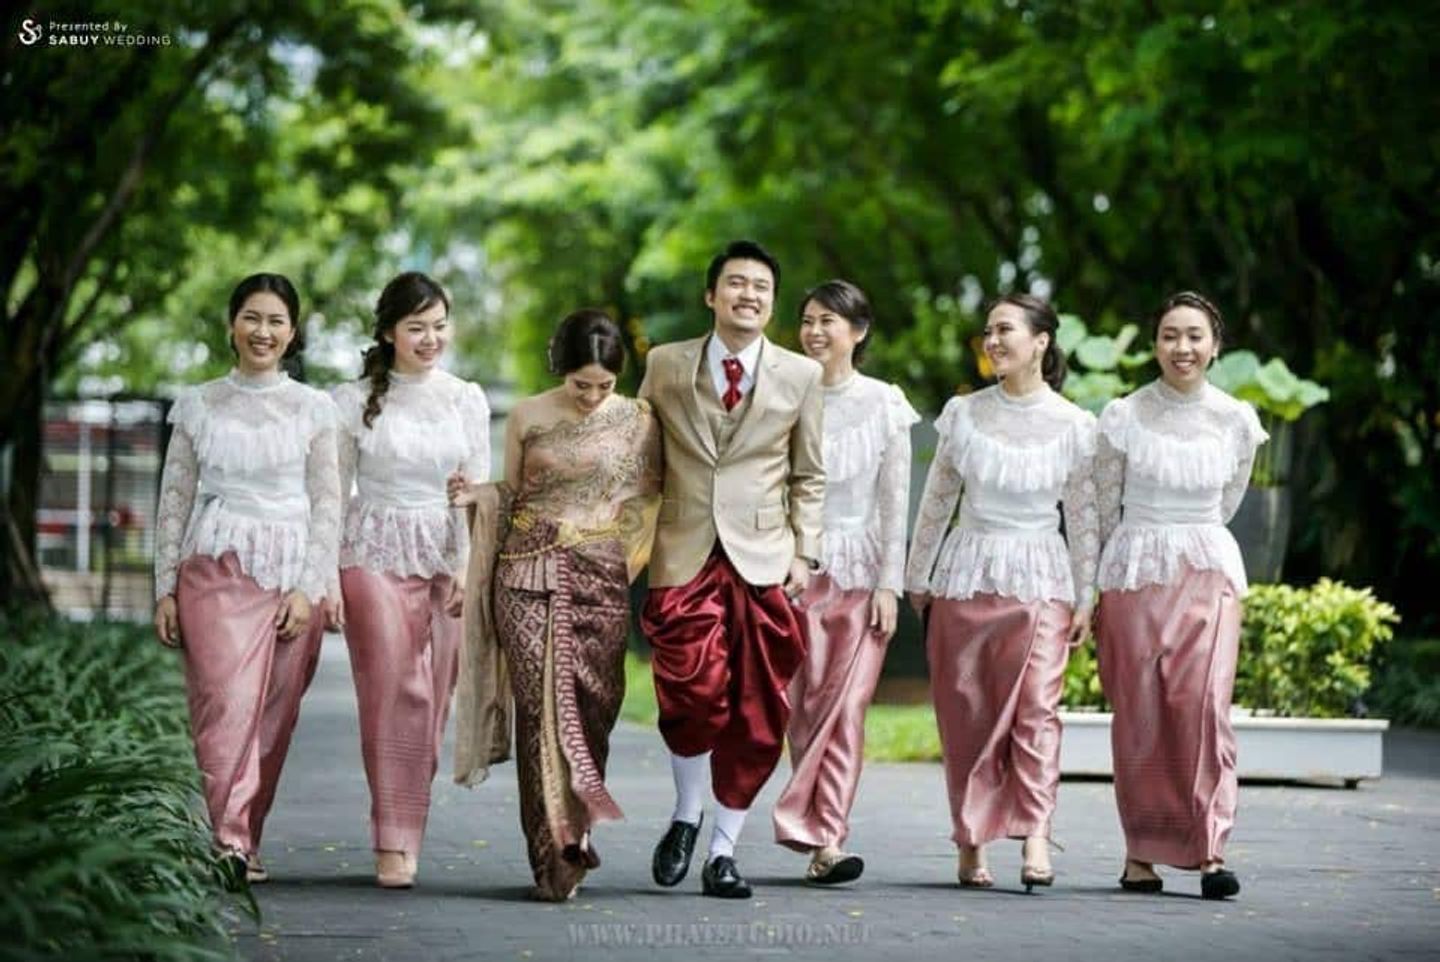 เพื่อนเจ้าสาว,ชุดเพื่อนเจ้าสาว,ชุดไทย,งานหมั้น,พิธีหมั้น,งานแต่งตอนเช้า,พิธีแต่งงาน,พิธีแต่งงานแบบไทย,เจ้าสาว,เจ้าบ่าว 15 ชุดไทยเพื่อนเจ้าสาว สวยงามตามประเพณีไทย